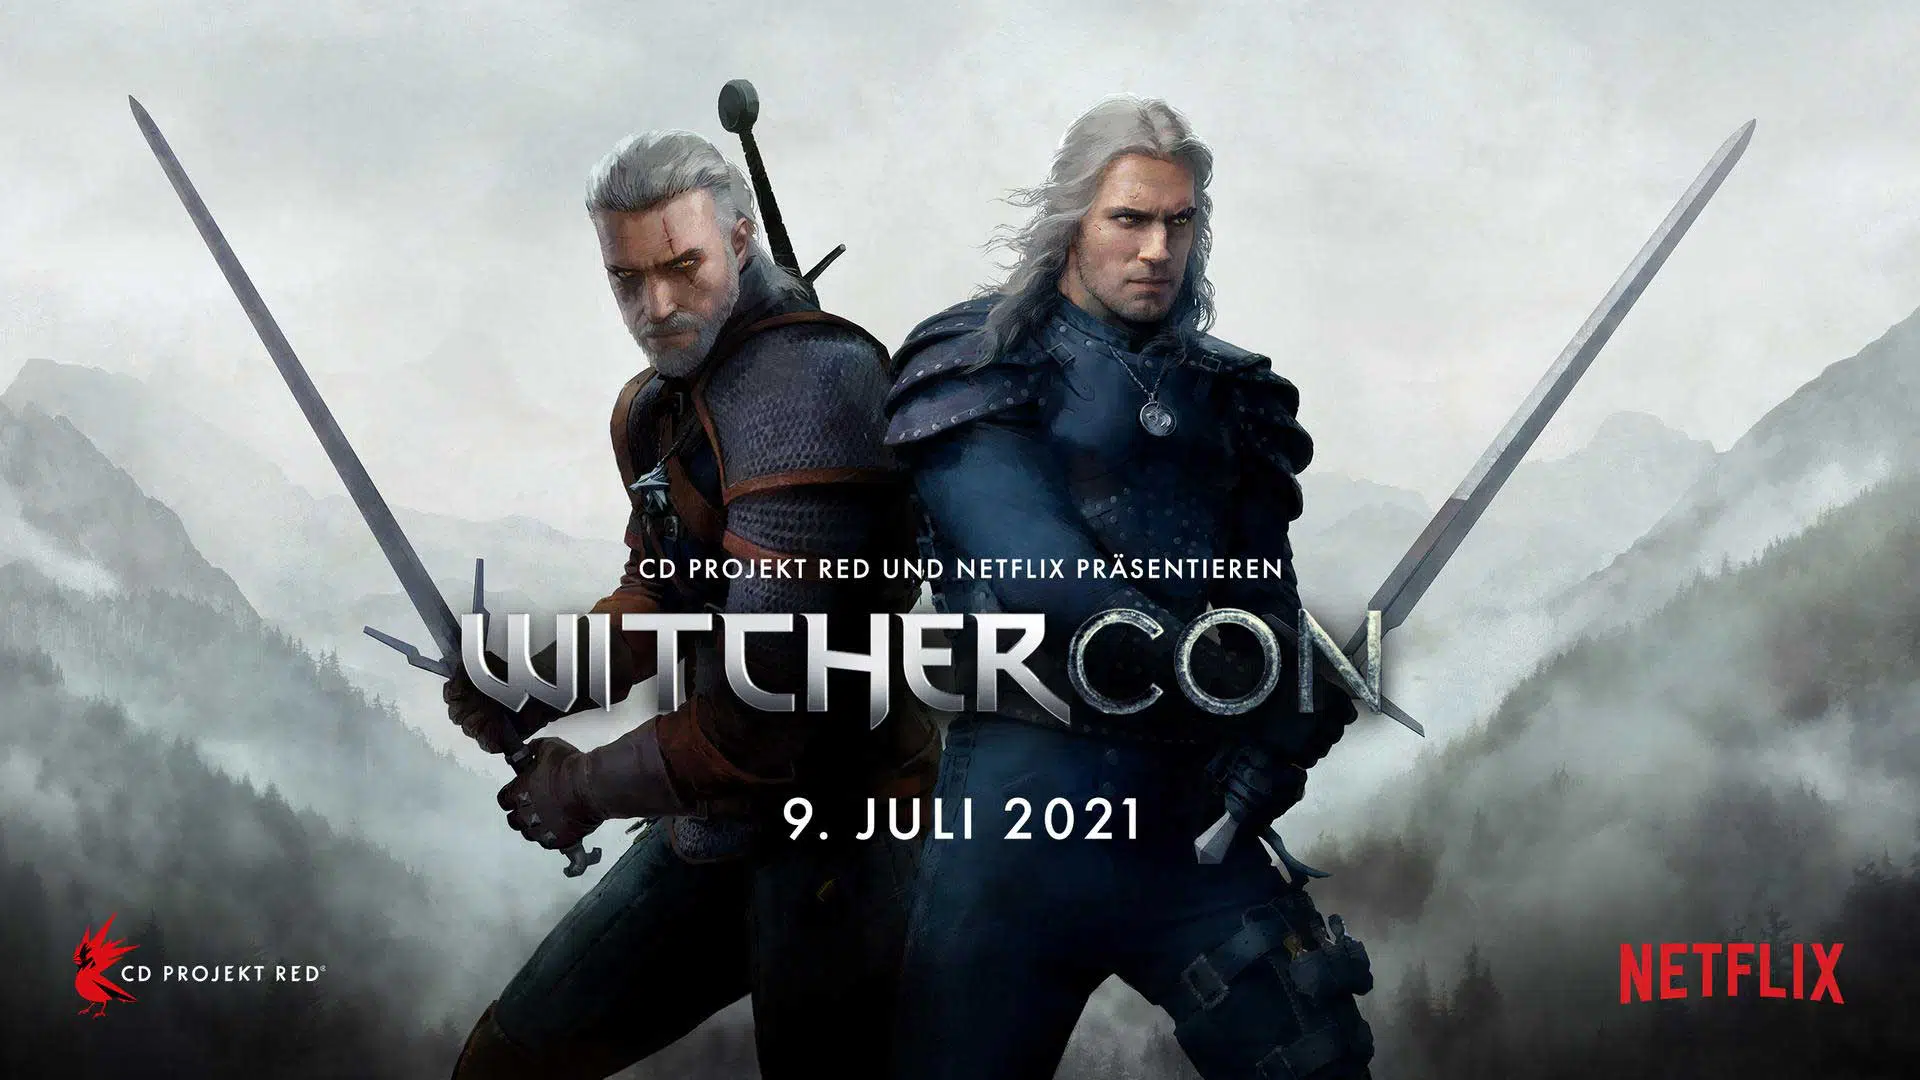 witchercon juli 2021